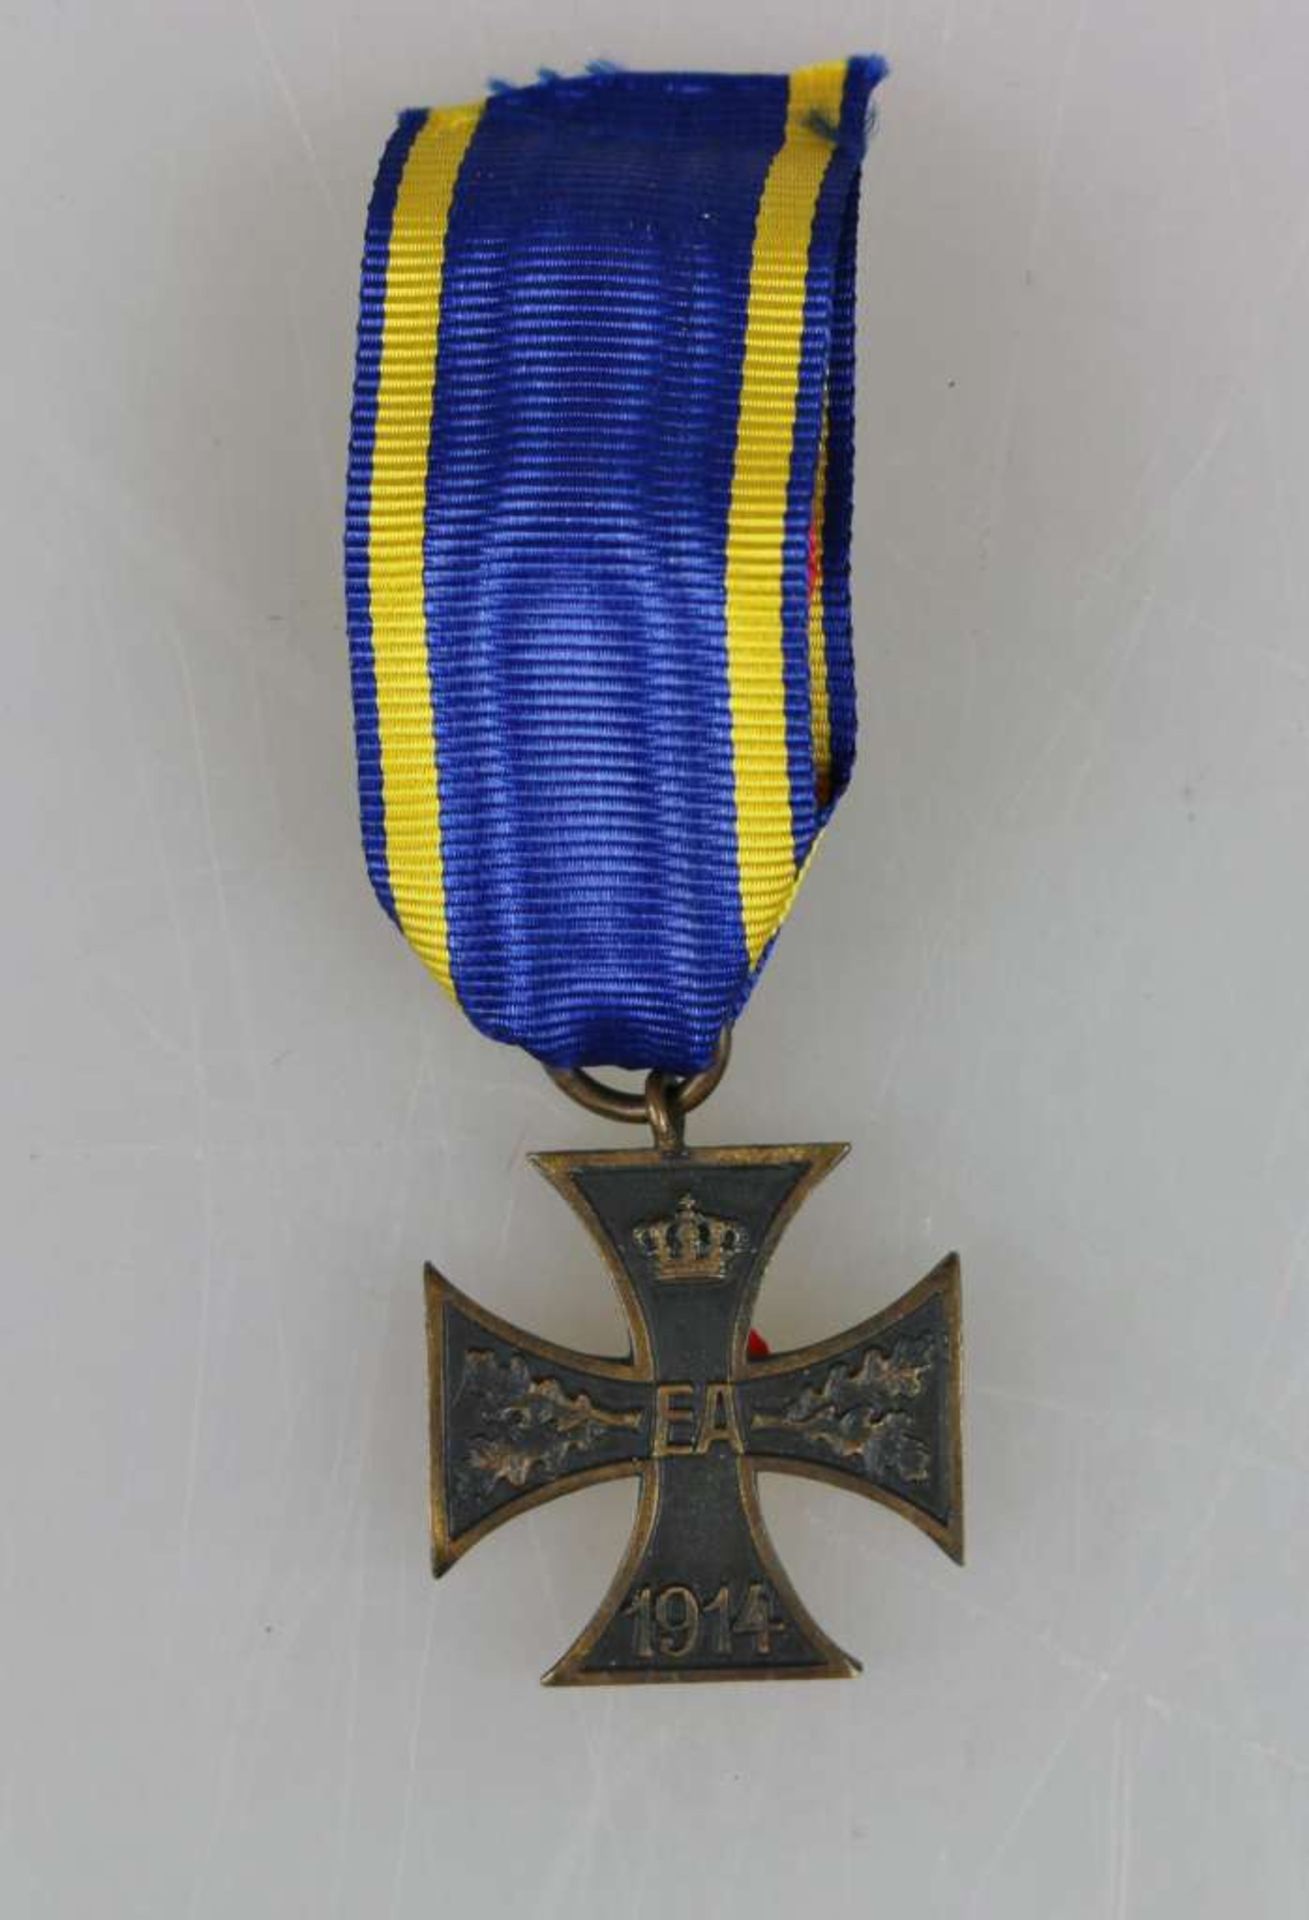 Braunschweig, Ernst August Kriegsverdienstkreuz 2. Klasse 1914 am Band, Buntmetall, Zustand 2.